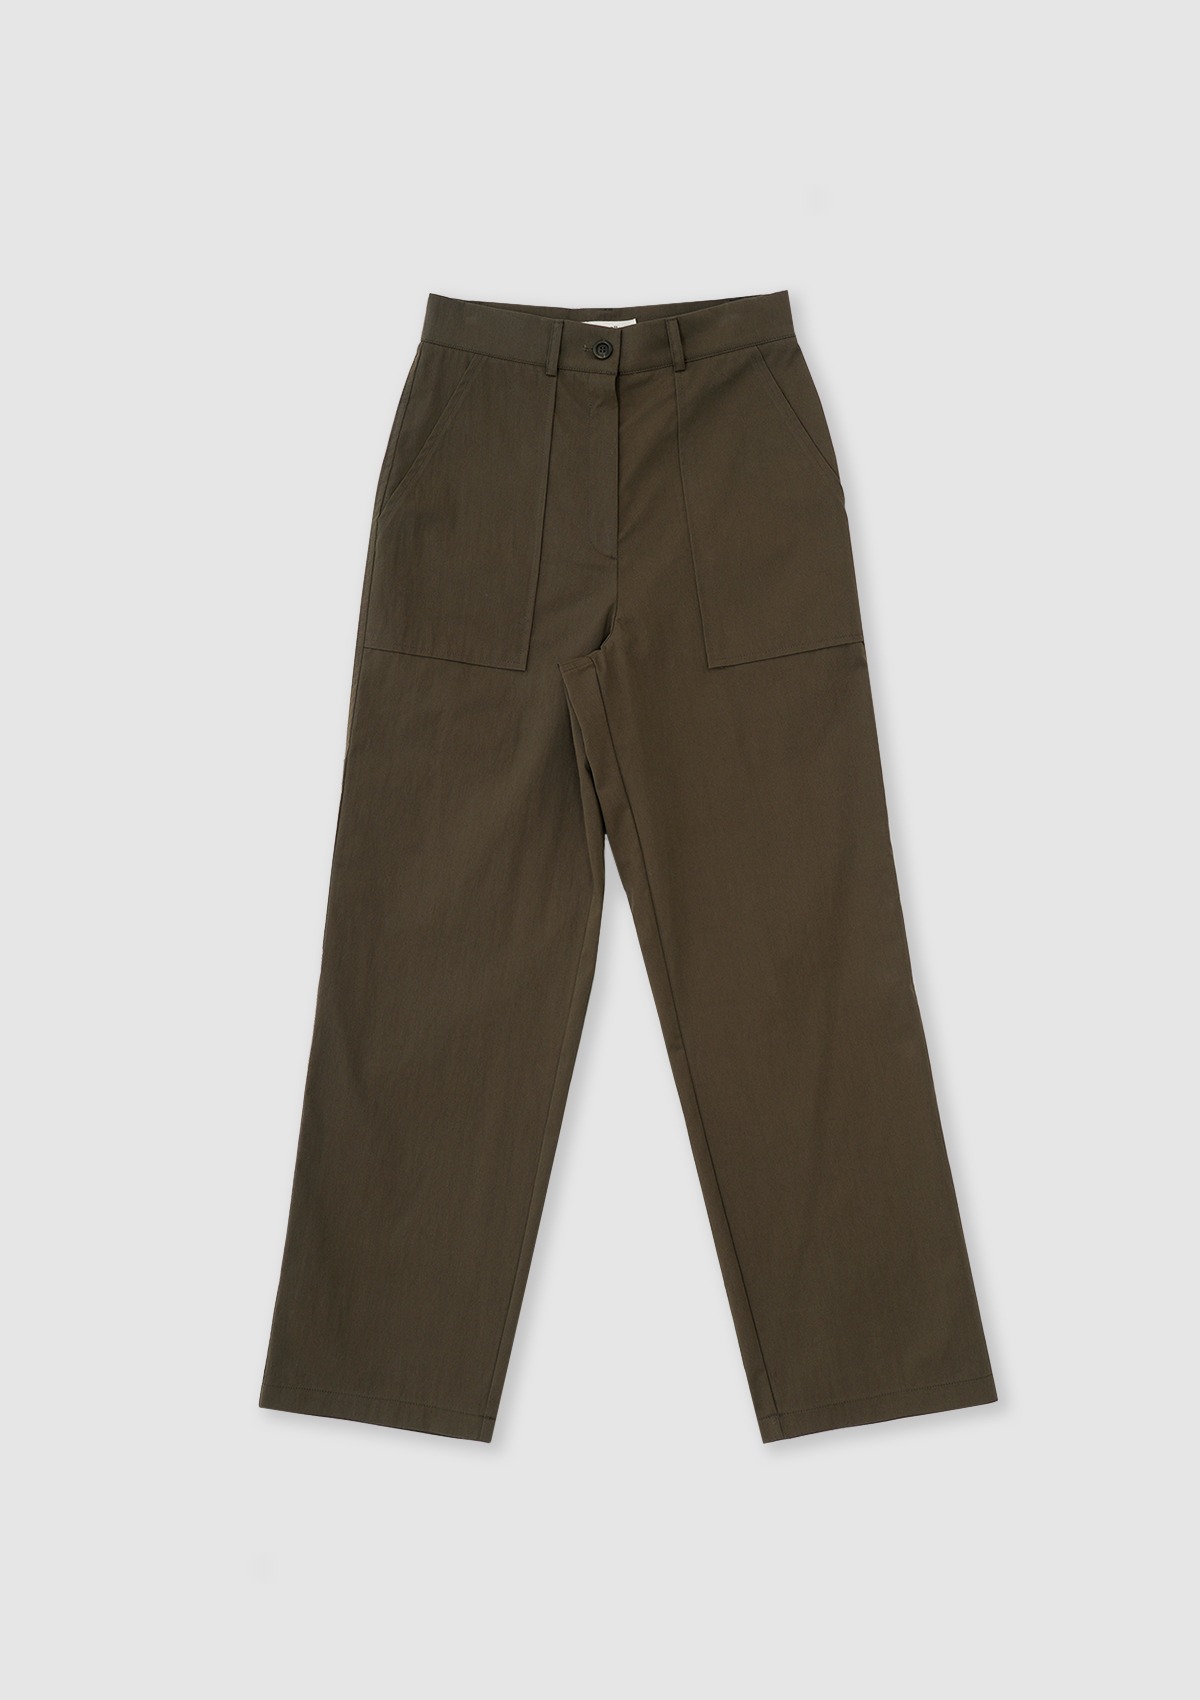 Pocket Pants (Khaki)